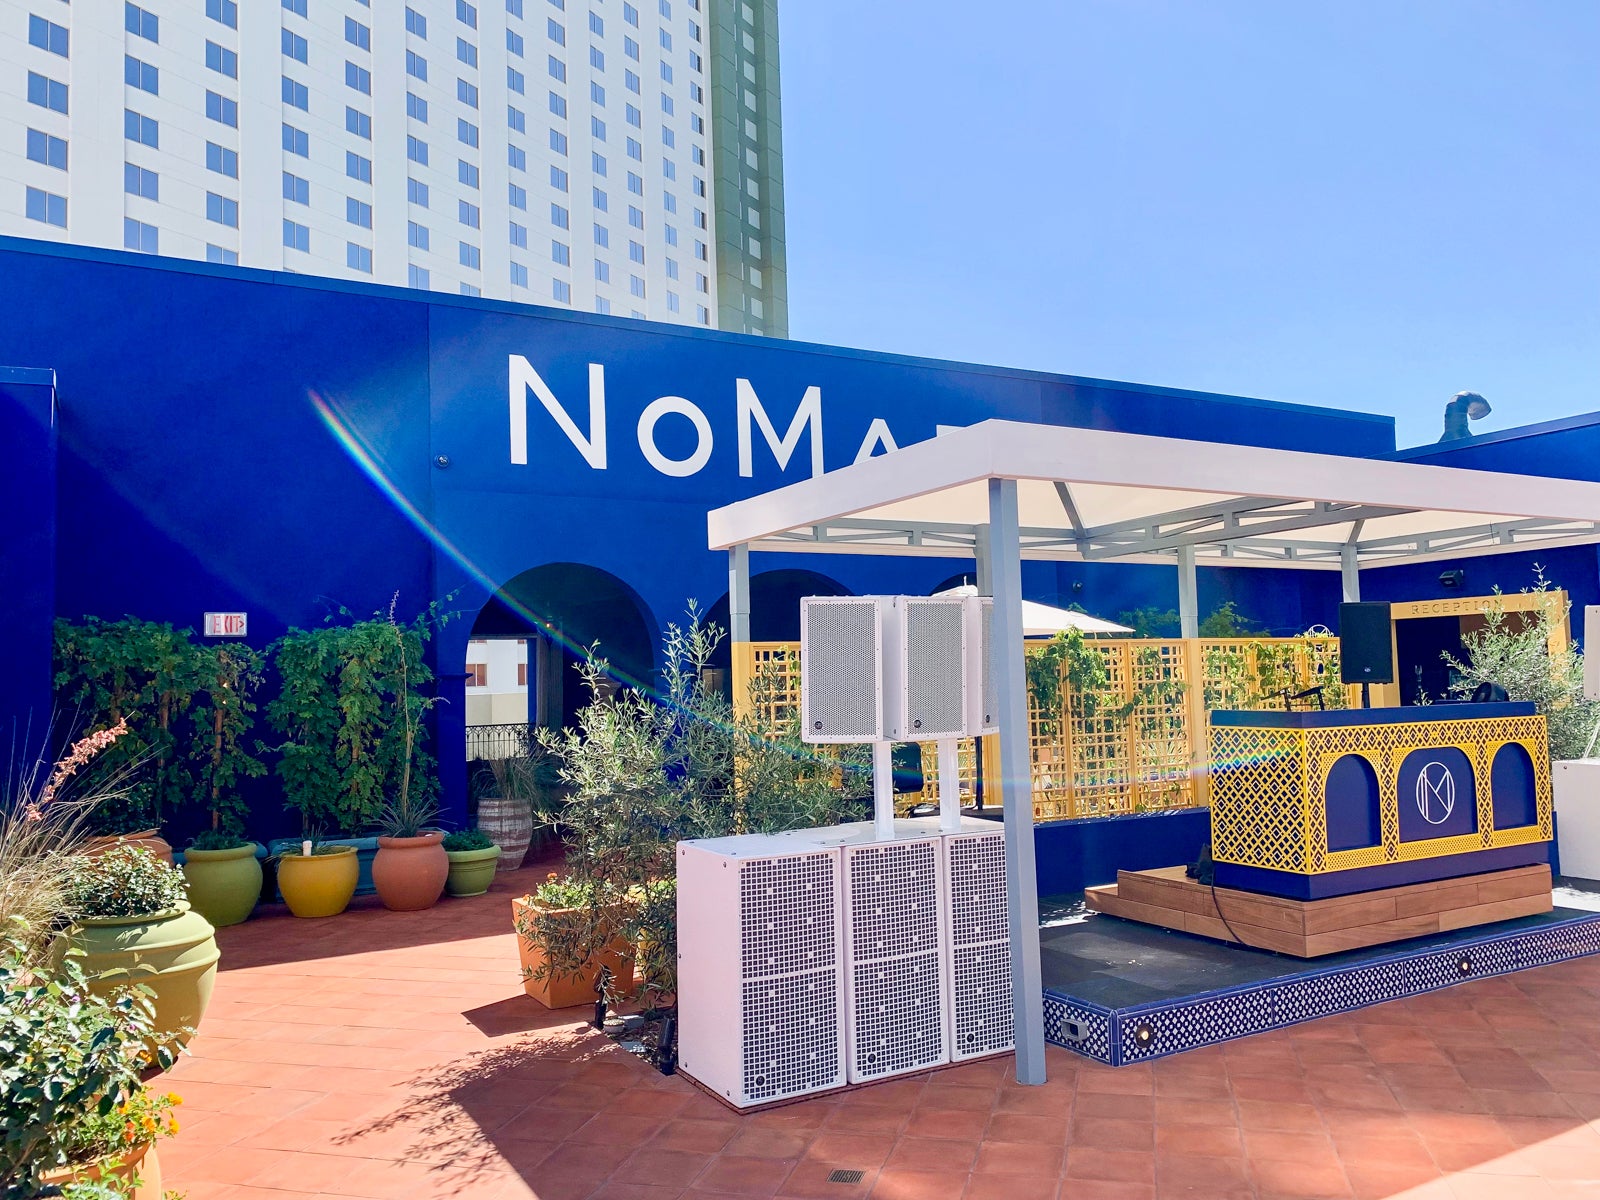 Nomad Casino Номад Игорный дом должностной веб-журнал игорный дом с игровыми автоматами и скидками